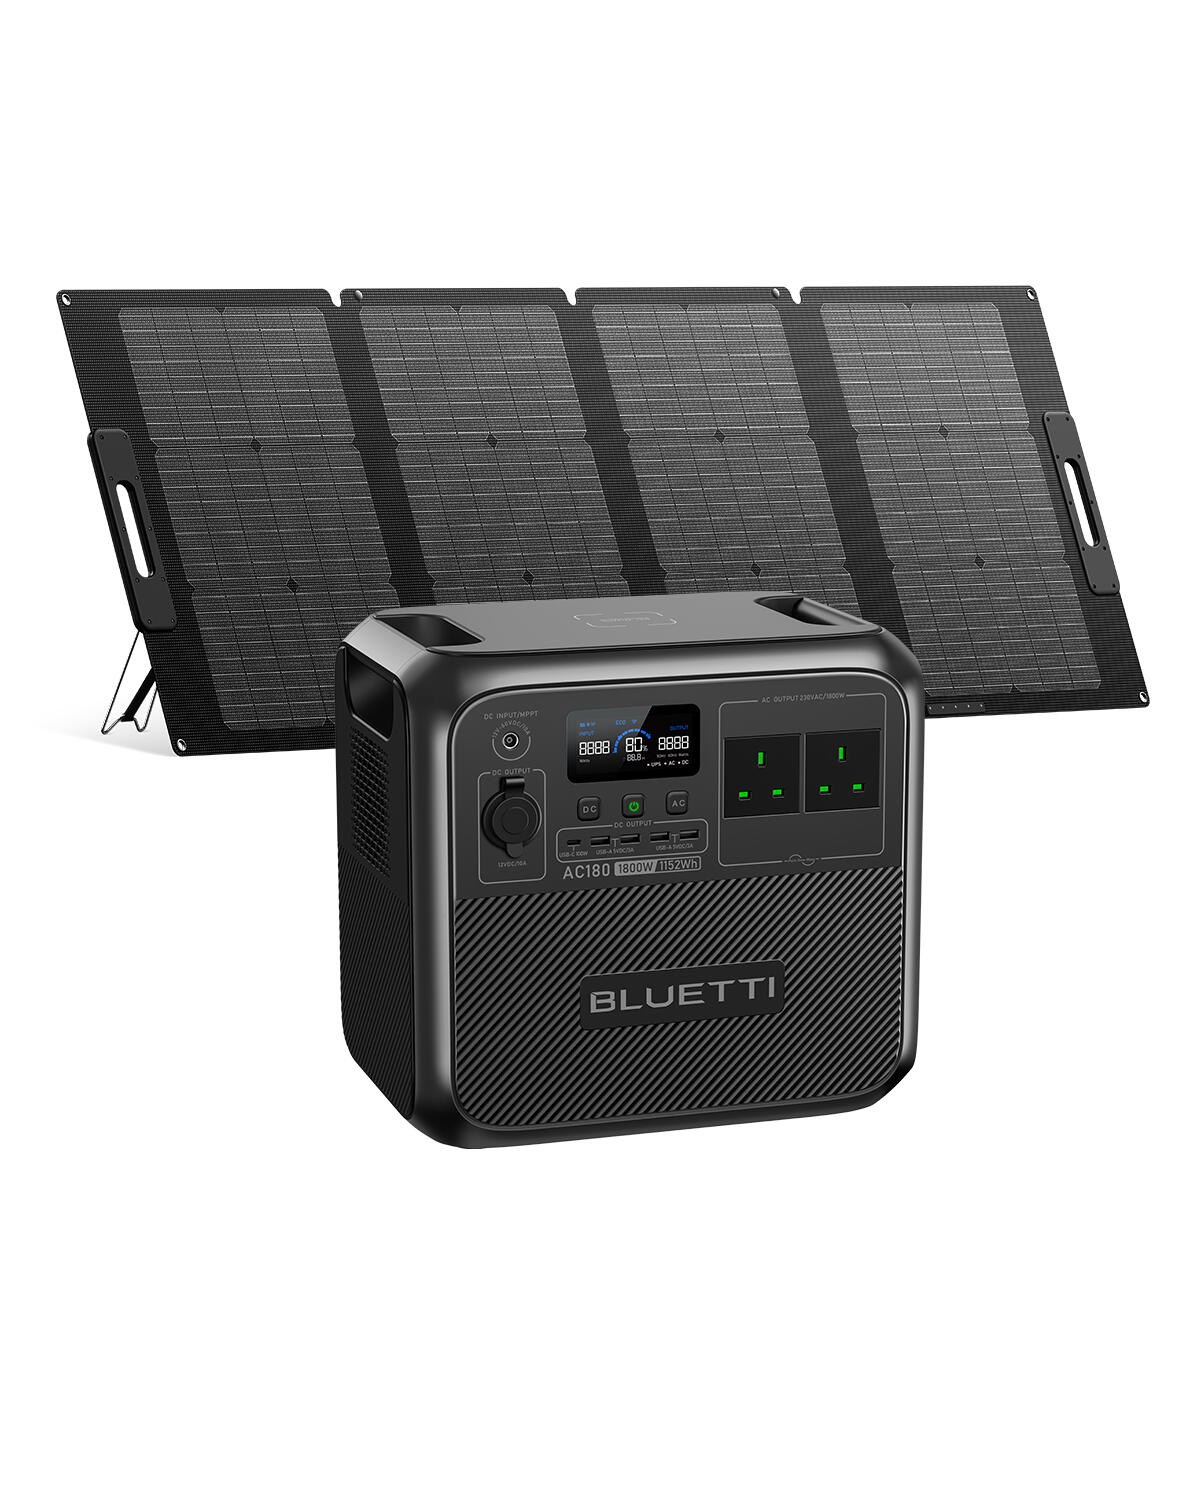 BLUETTI BLUETTI Solar Generator AC180 1152Wh/1800W with PV120S Solar Panel for Camping